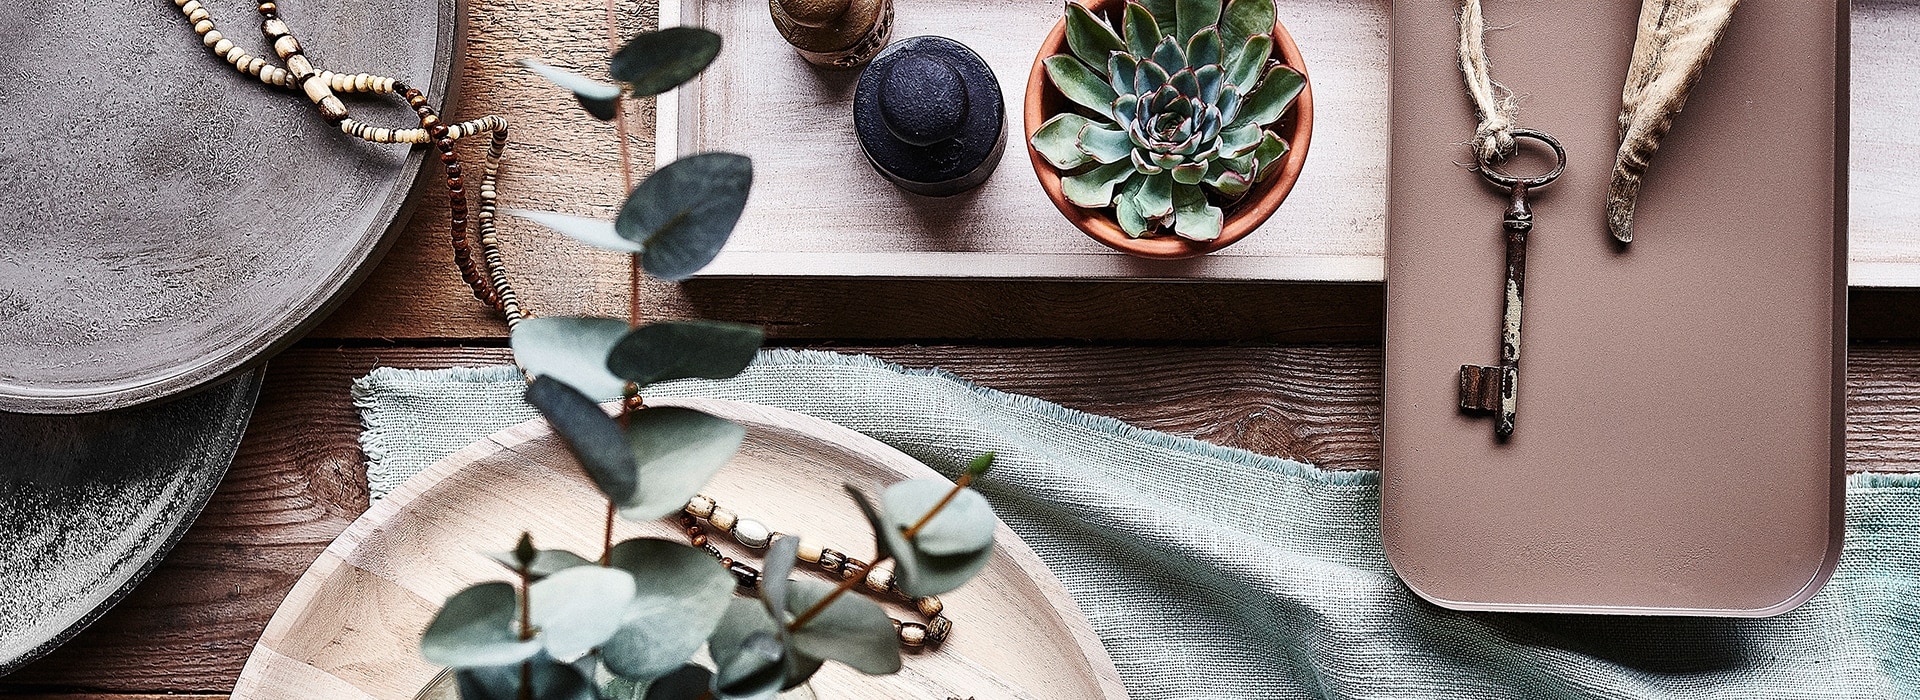 Pflanzen und dekorative Platten